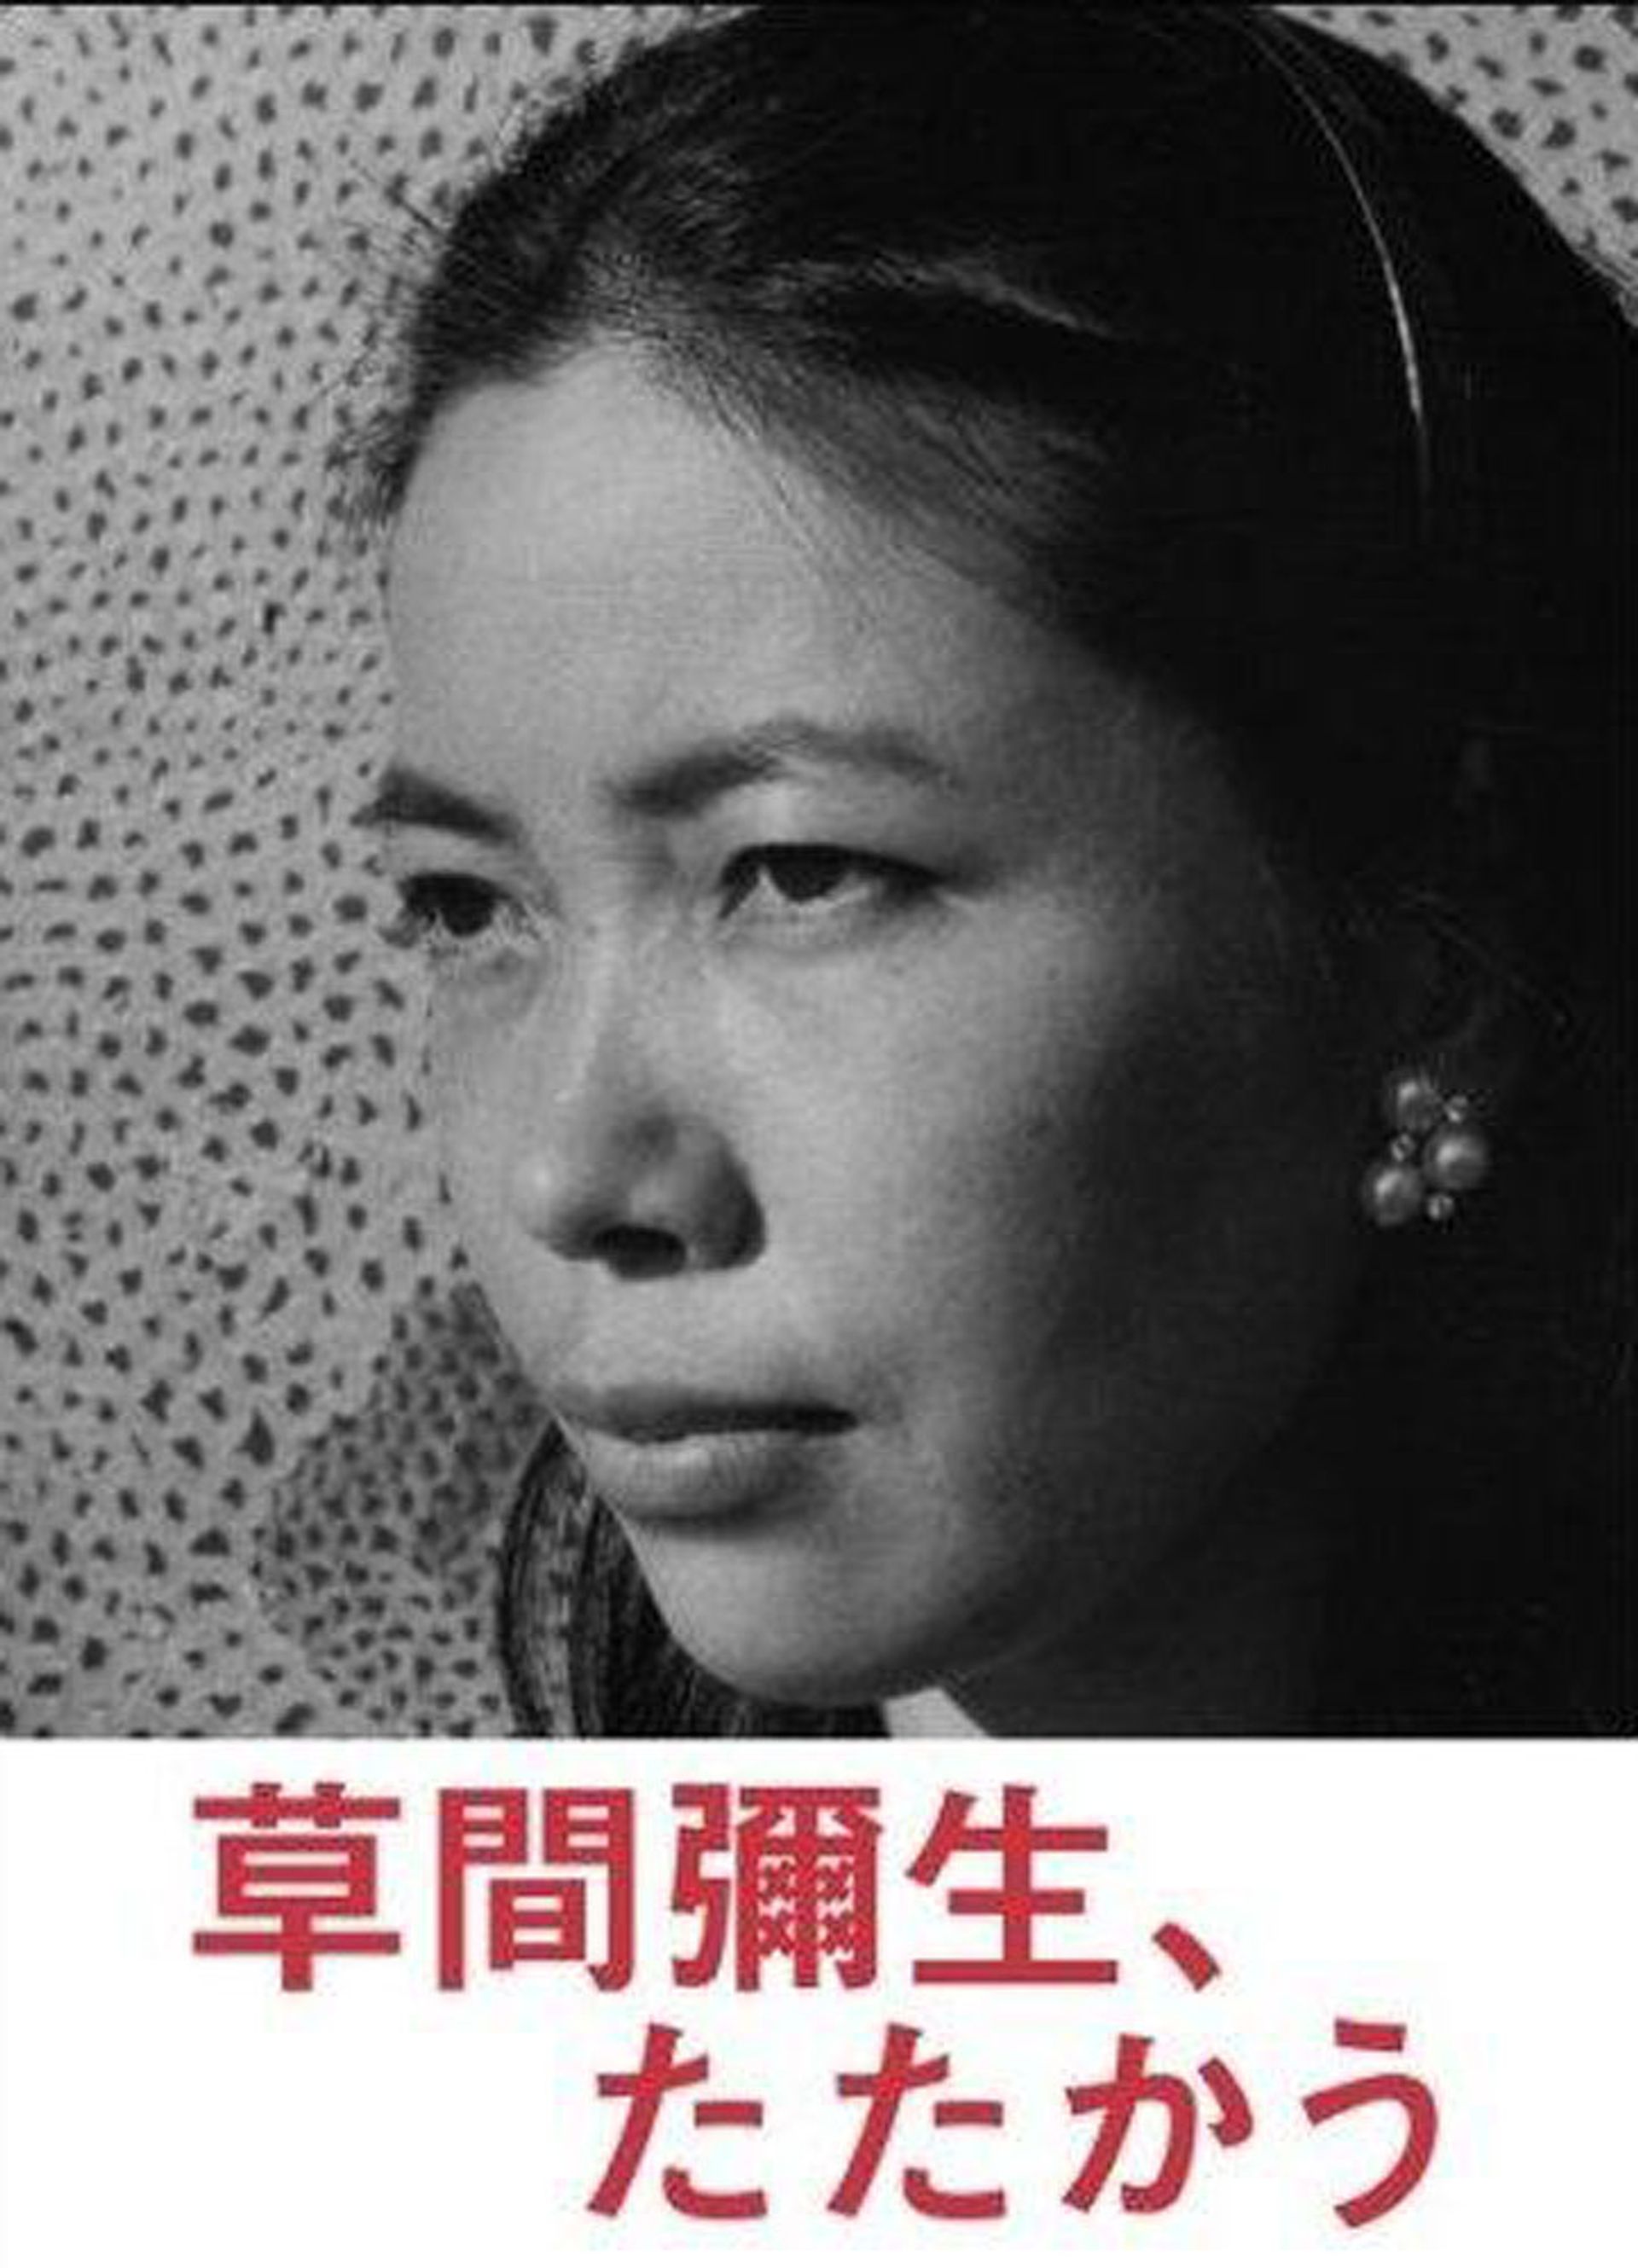 biography yayoi kusama